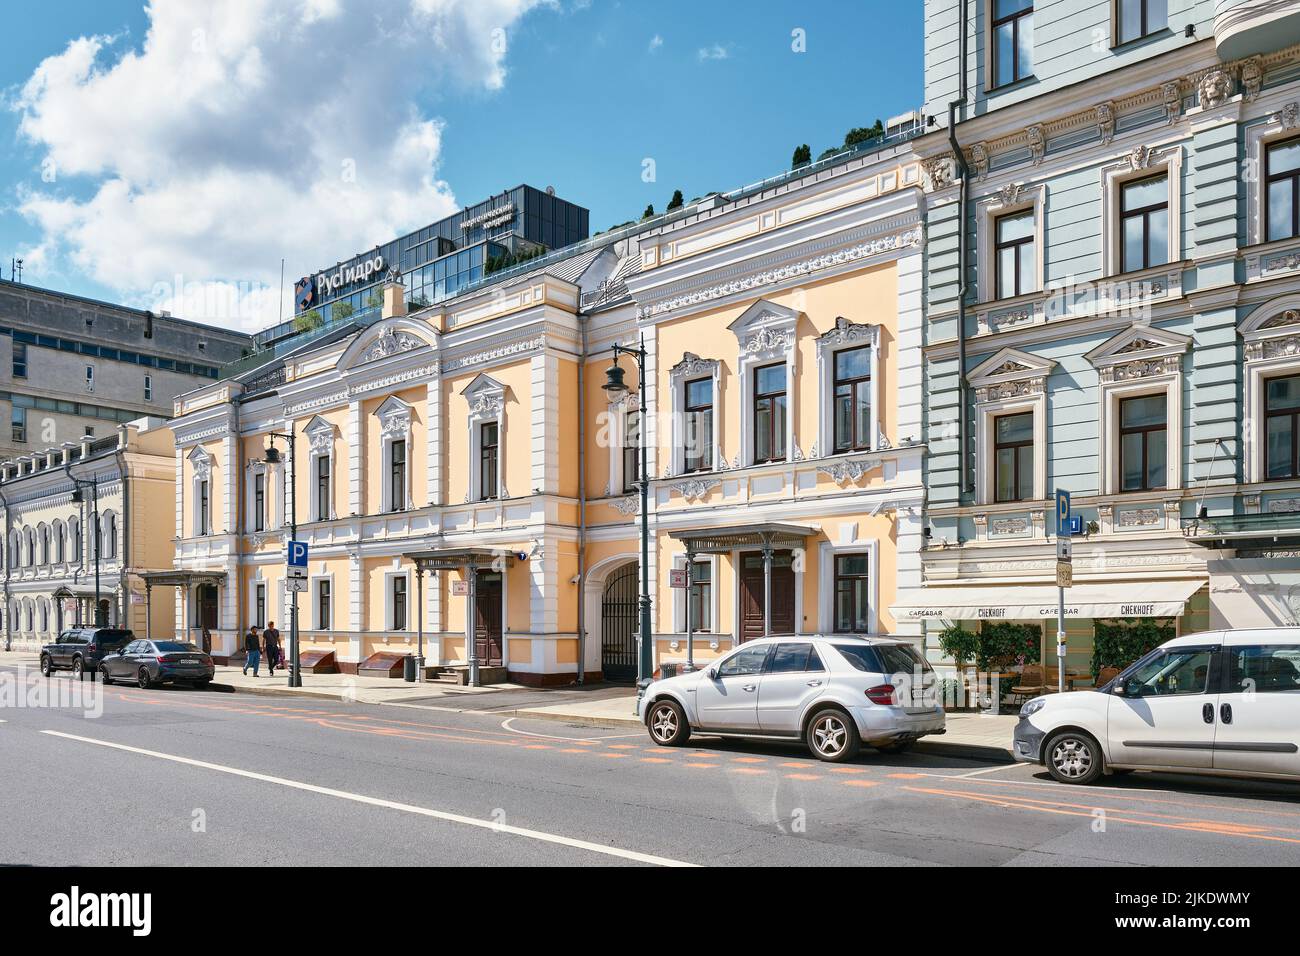 Vista de la casa principal de la antigua mansión de la ciudad construida a finales del siglo 19th en la calle Malaya Dmitrovka, punto de referencia: Moscú, Rusia - 22 de julio de 2022 Foto de stock